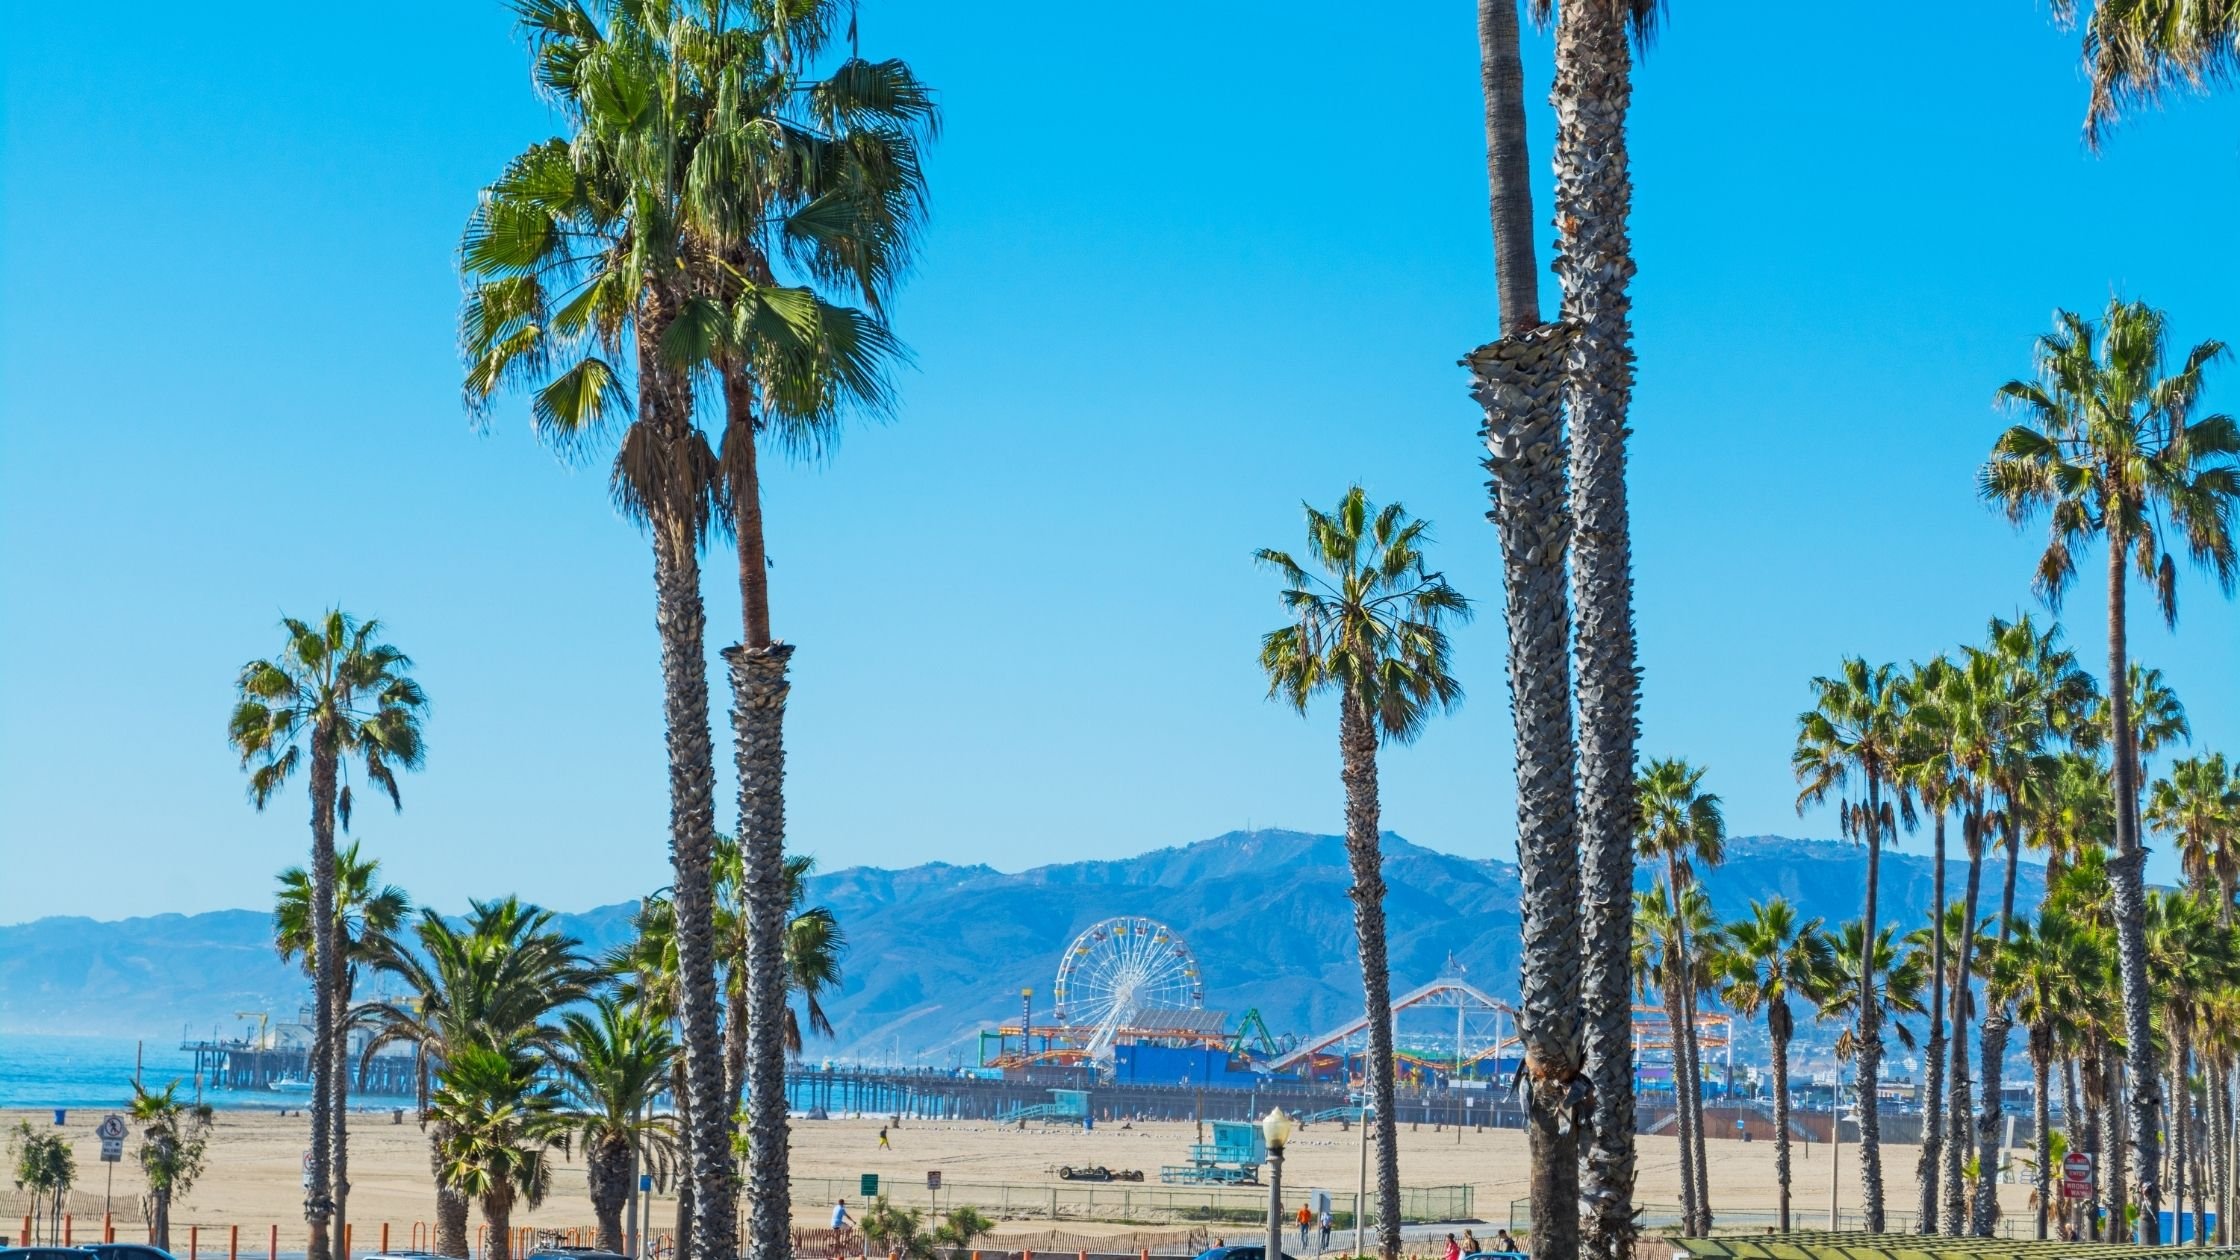 Palm trees in Santa Monica, beach view